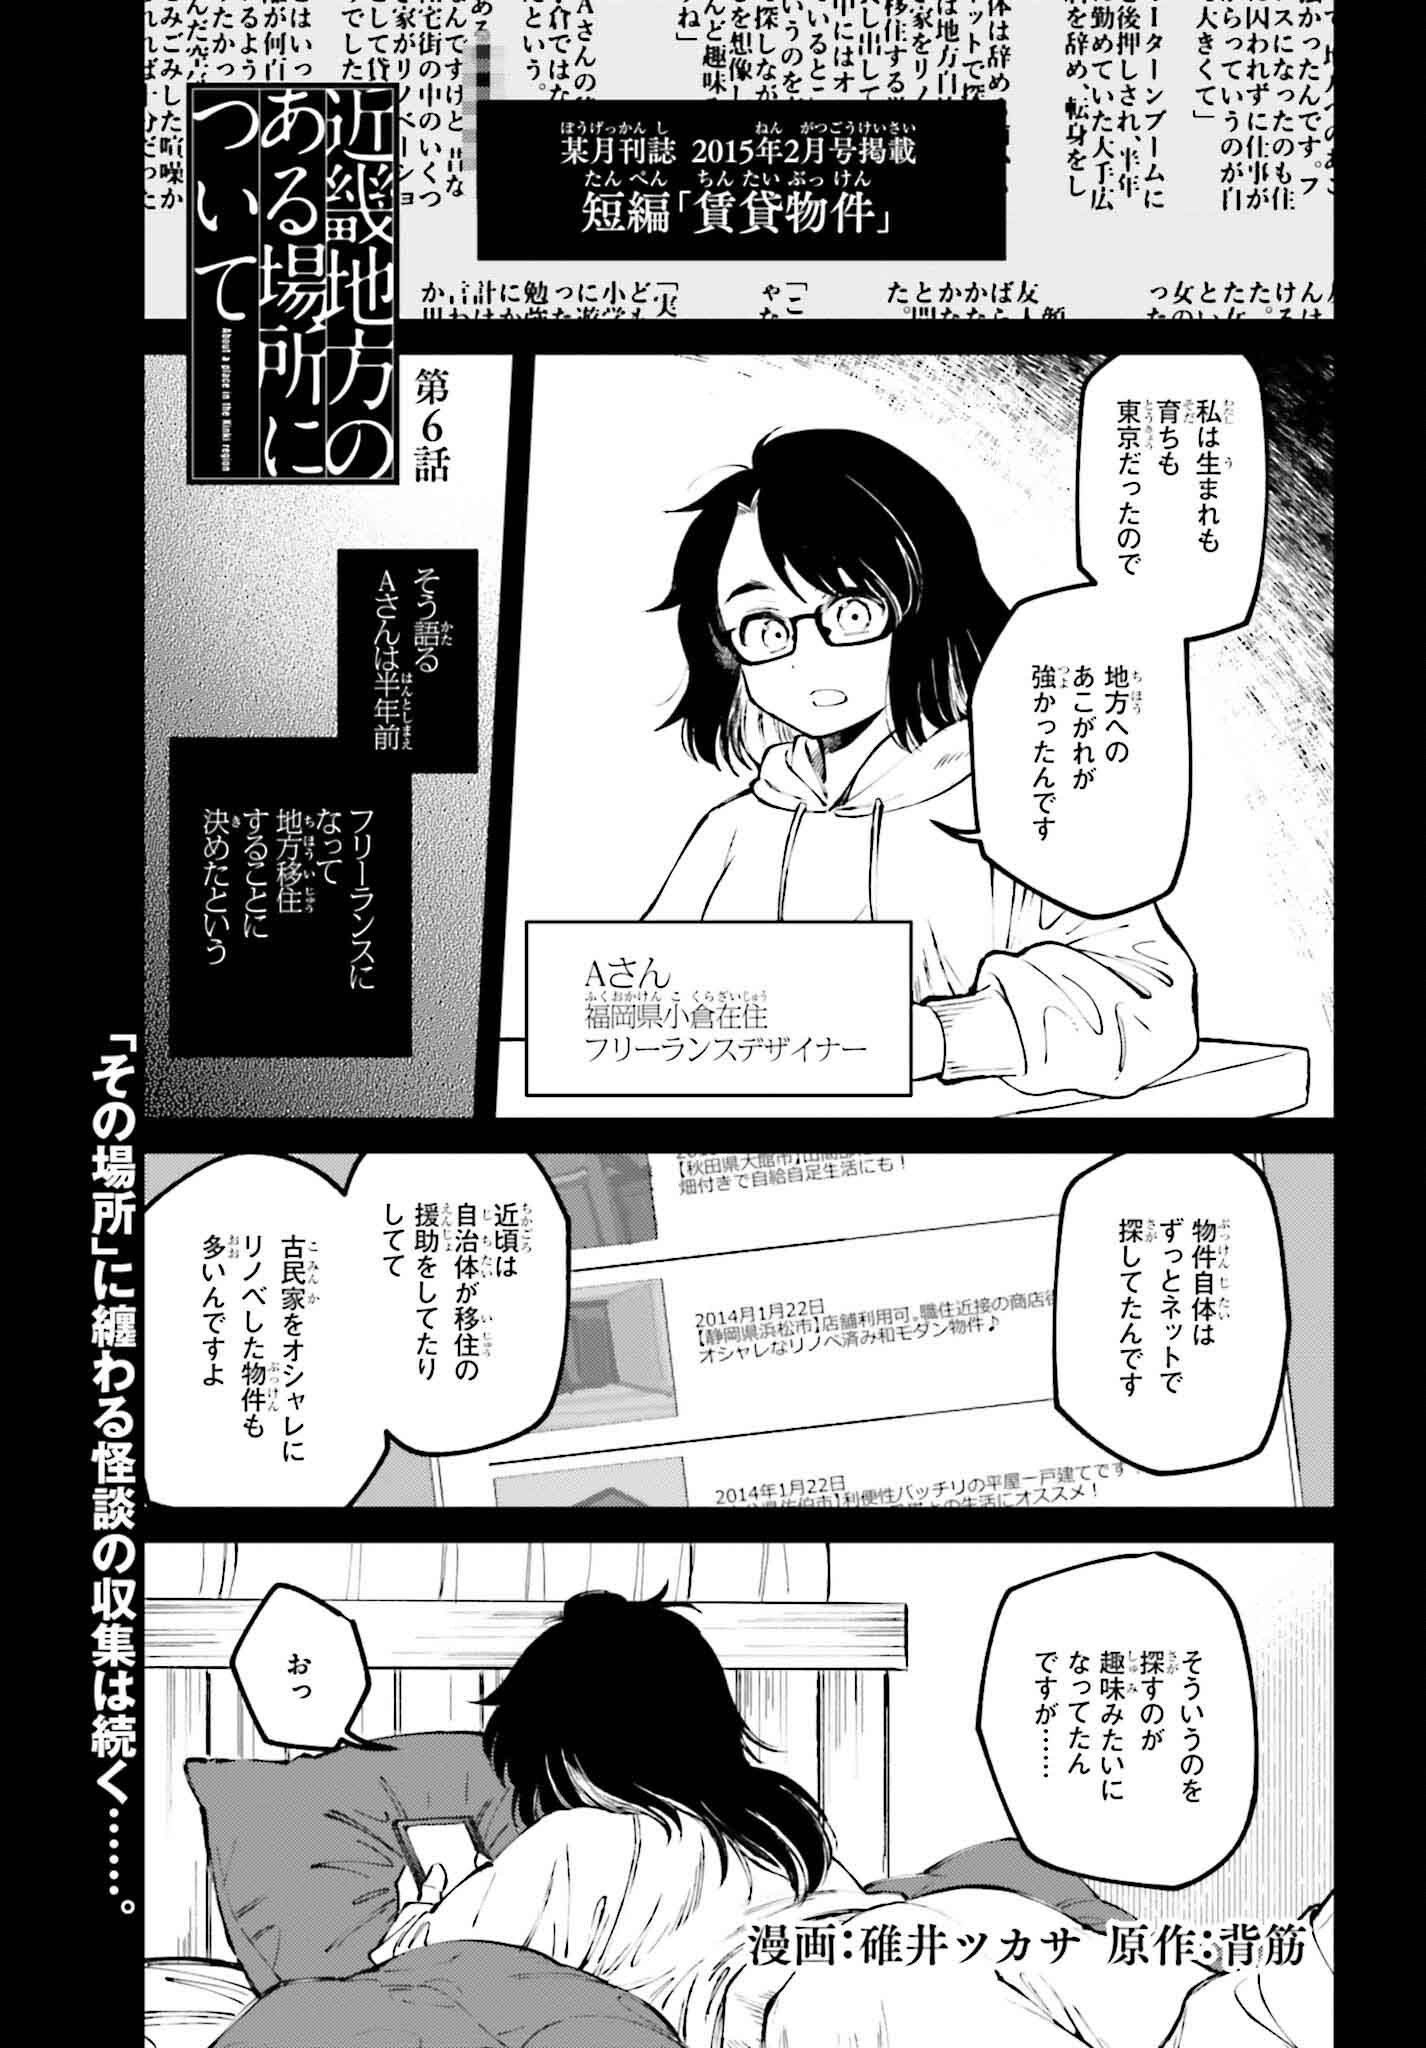 Kinki Chihou no Aru Basho ni Tsuite - Chapter 6 - Page 1